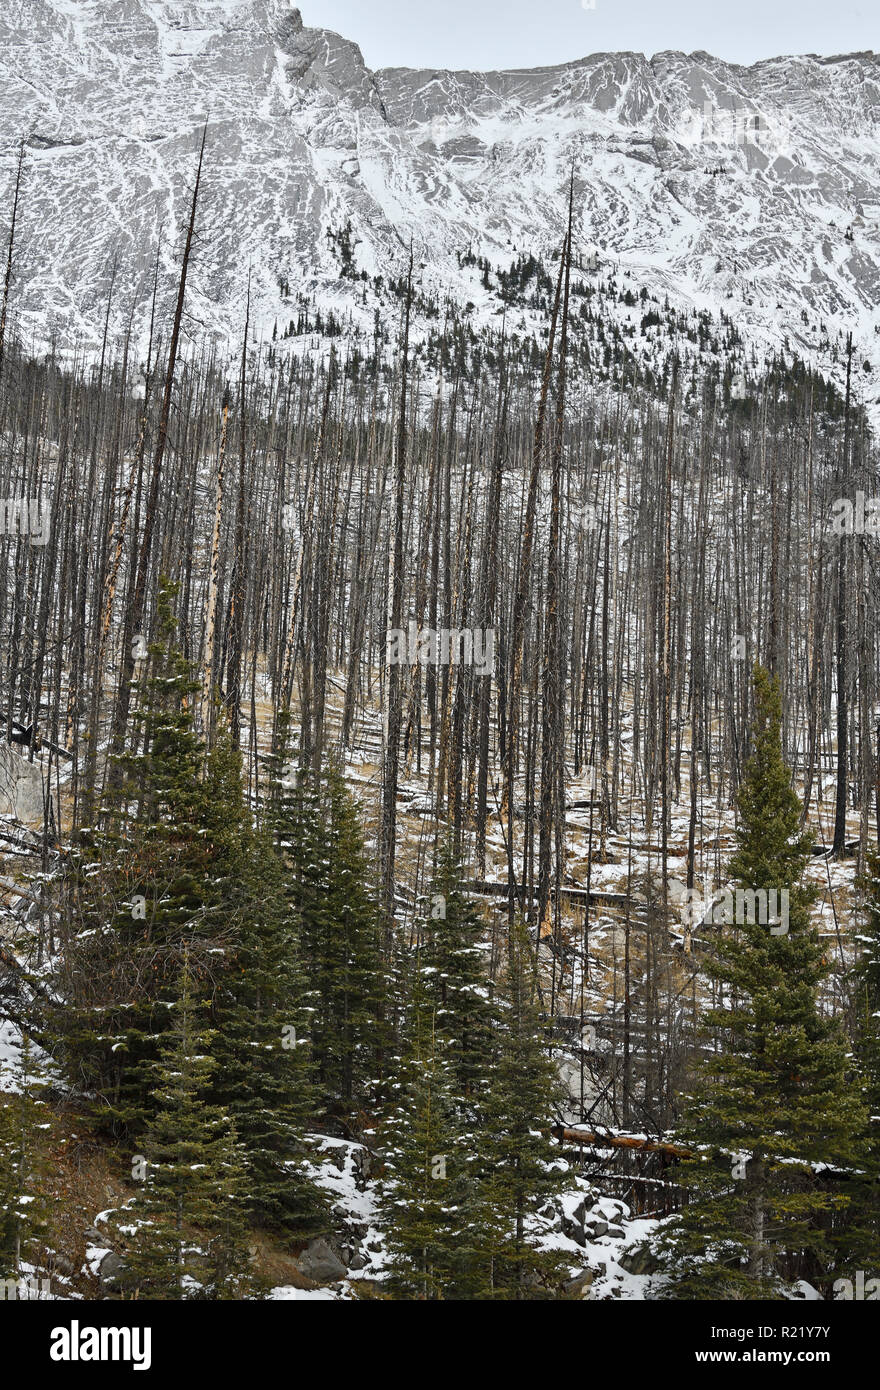 Eine vertikale Landschaft Bild der Bäume in einem devestating Waldbrand im Jahr 2015 am Medicine Lake Jasper National Park in Alberta, Kanada gebrannt Stockfoto